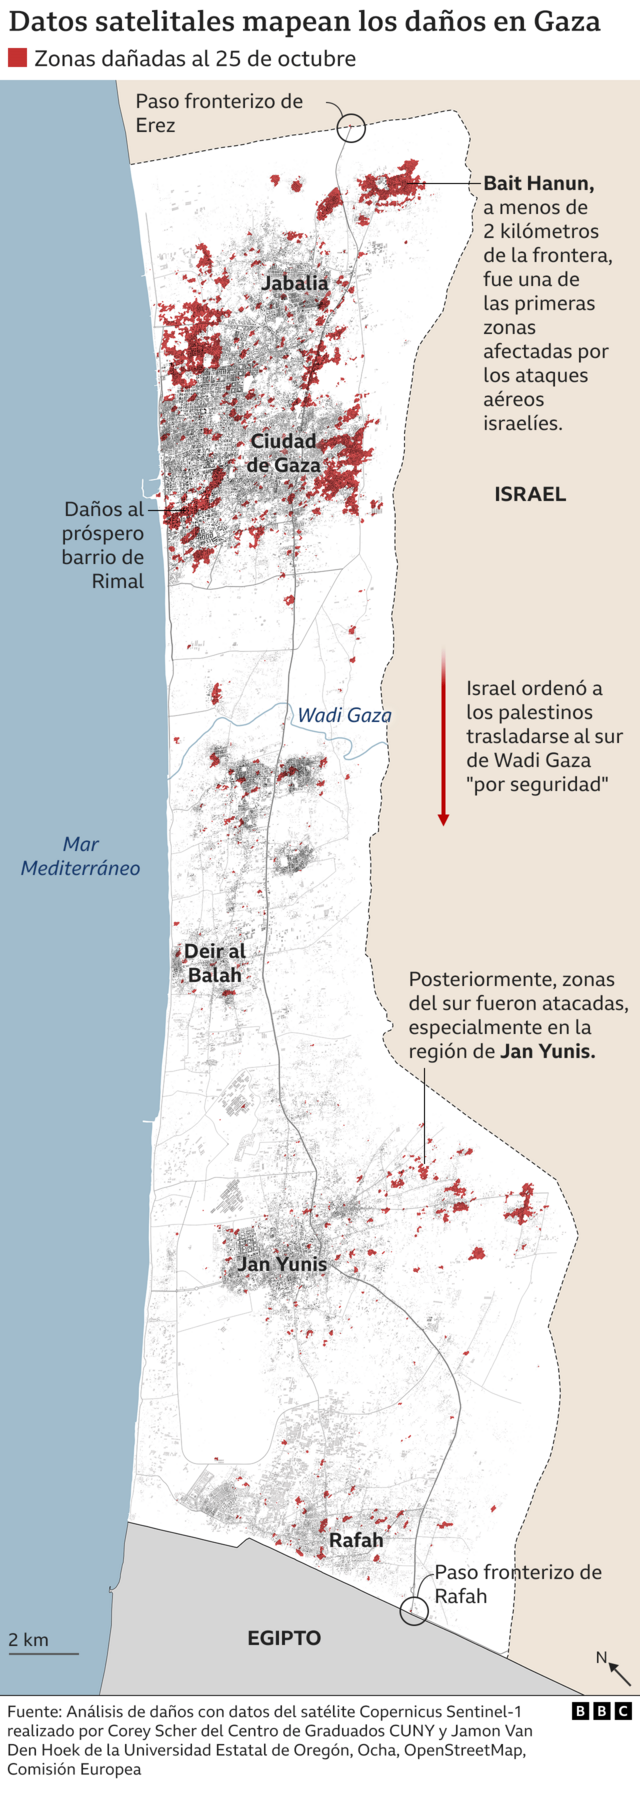 Mapa de los daños en Gaza